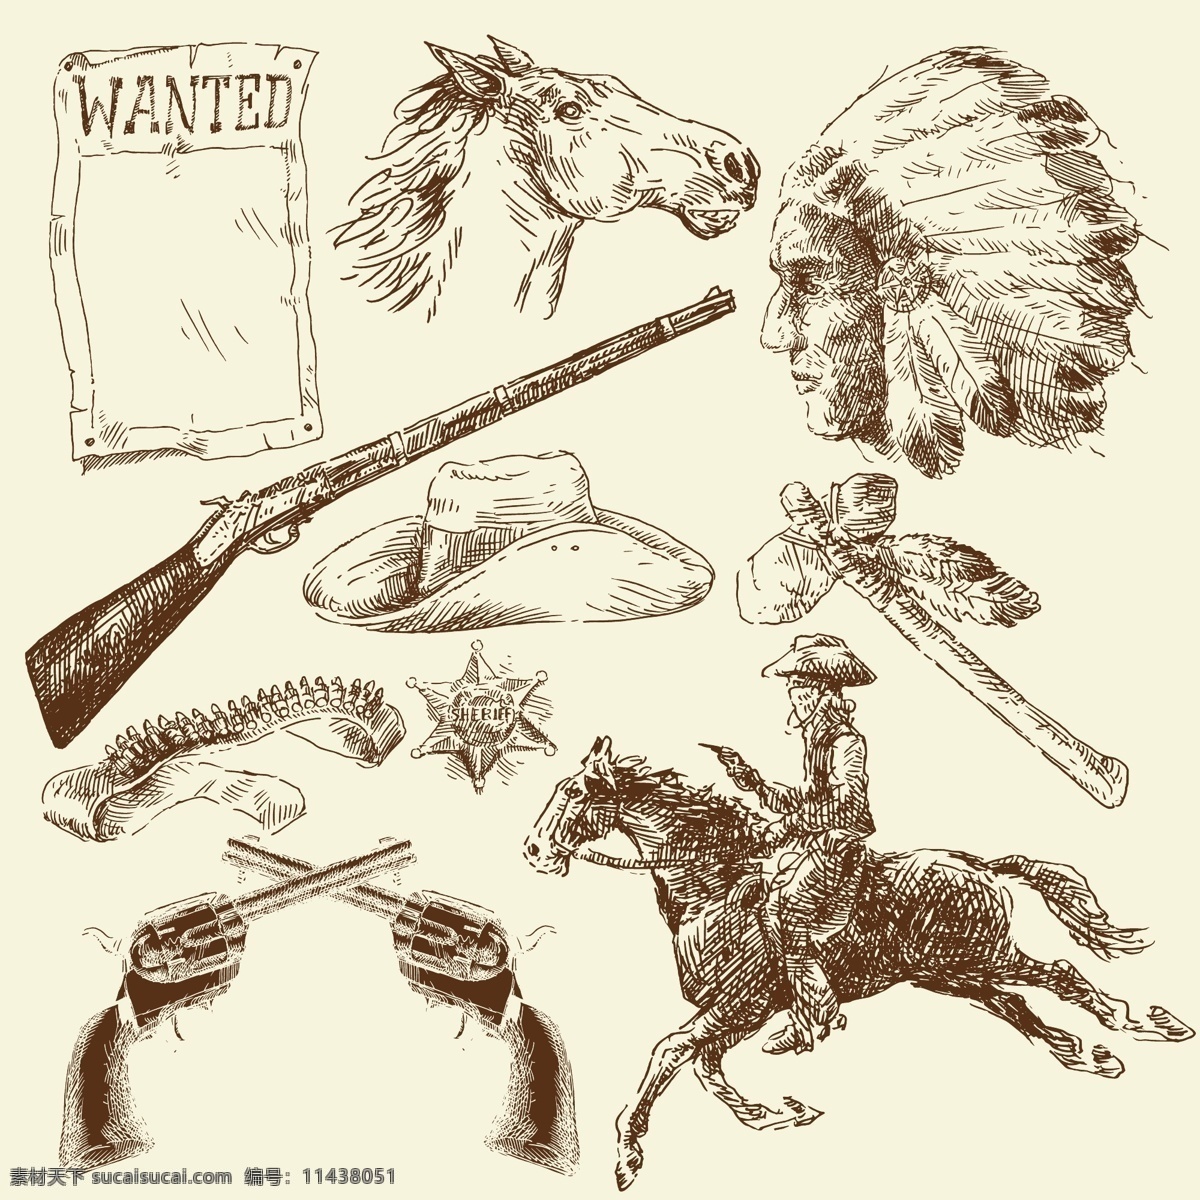 西部牛仔线稿 动物 猎枪 马头 帽子 模板 骑马 设计稿 矢量素材 手绘 手枪 西部牛仔 线稿 马 印第安人 羽毛 素描 猎人 素材元素 源文件 矢量图